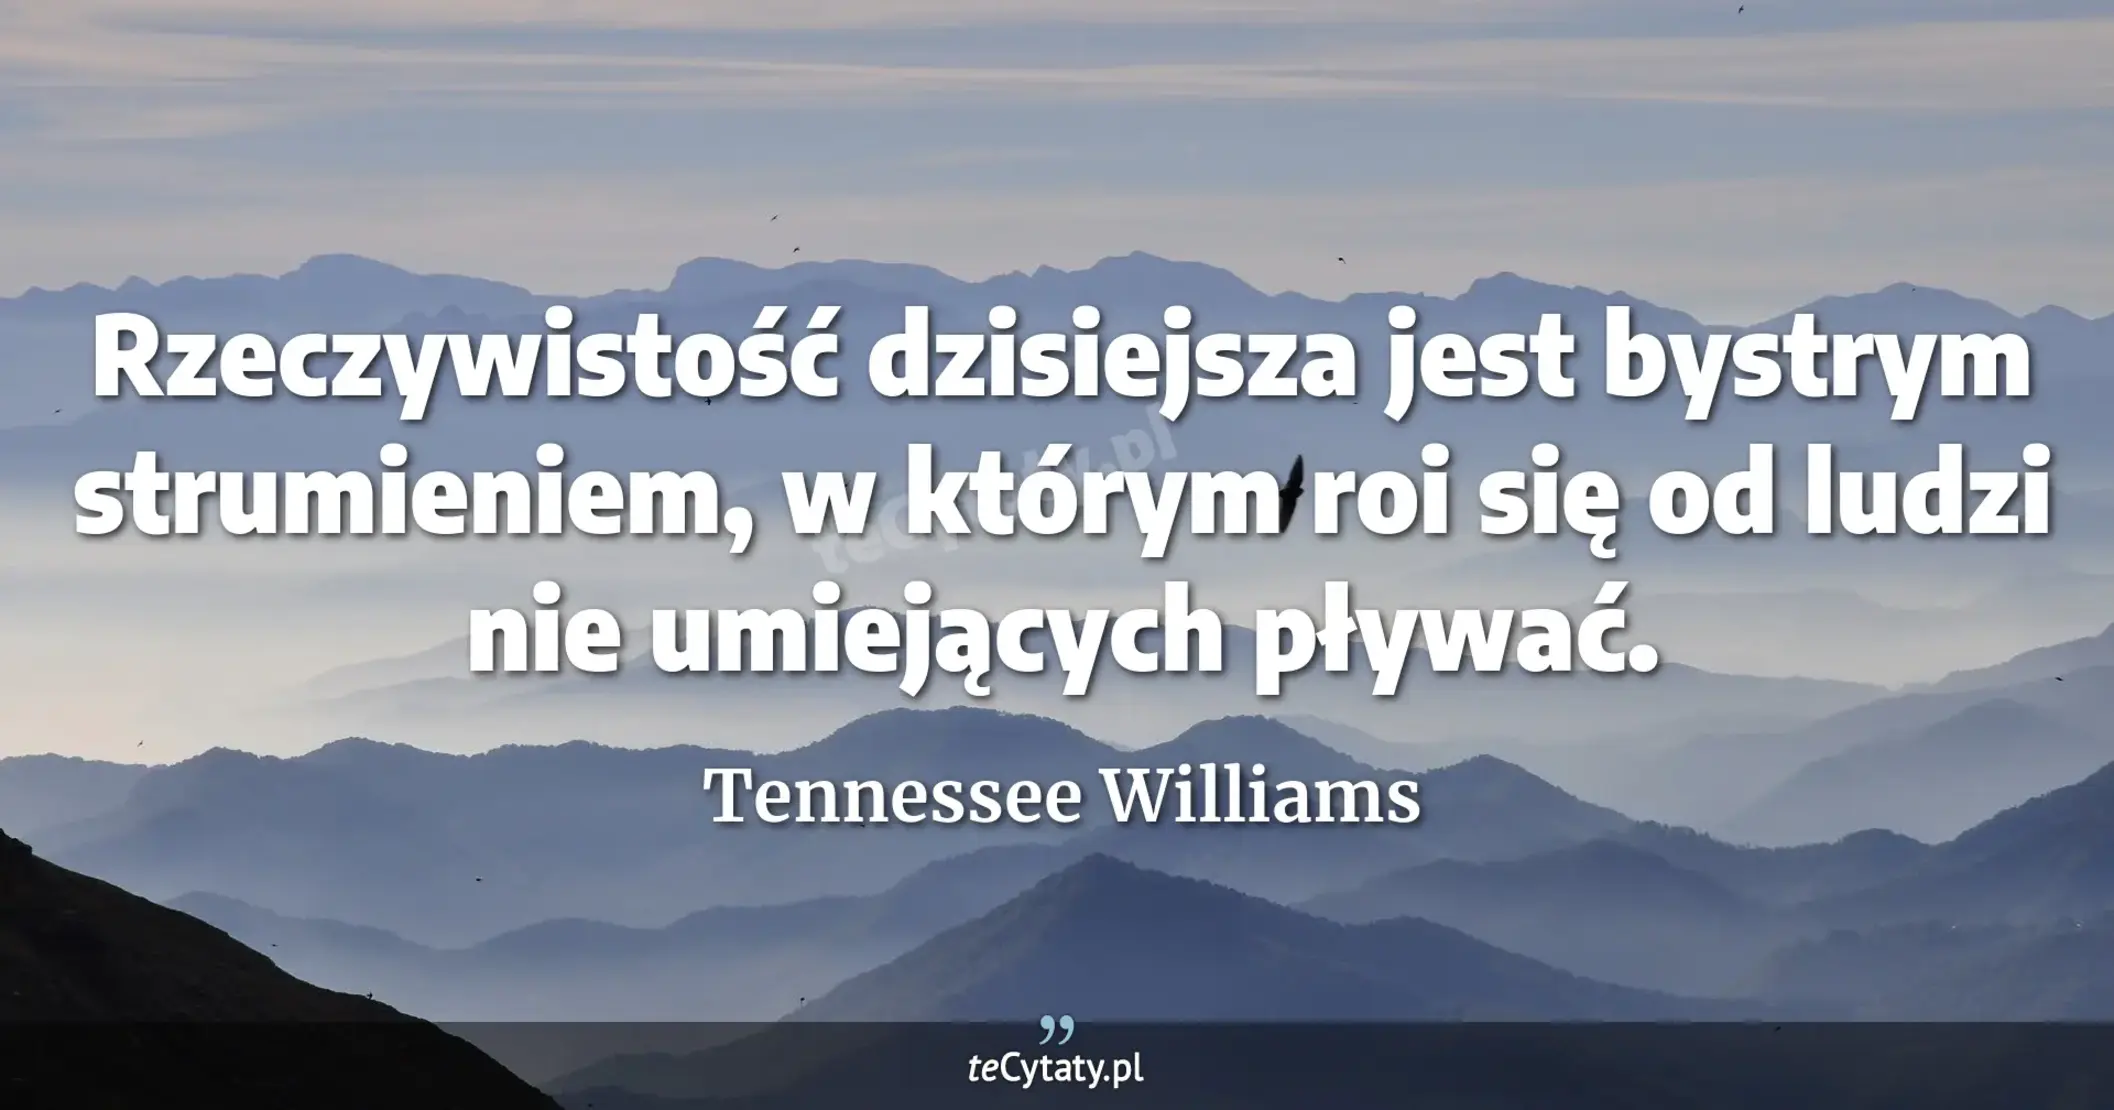 Rzeczywistość dzisiejsza jest bystrym strumieniem, w którym roi się od ludzi nie umiejących pływać. - Tennessee Williams